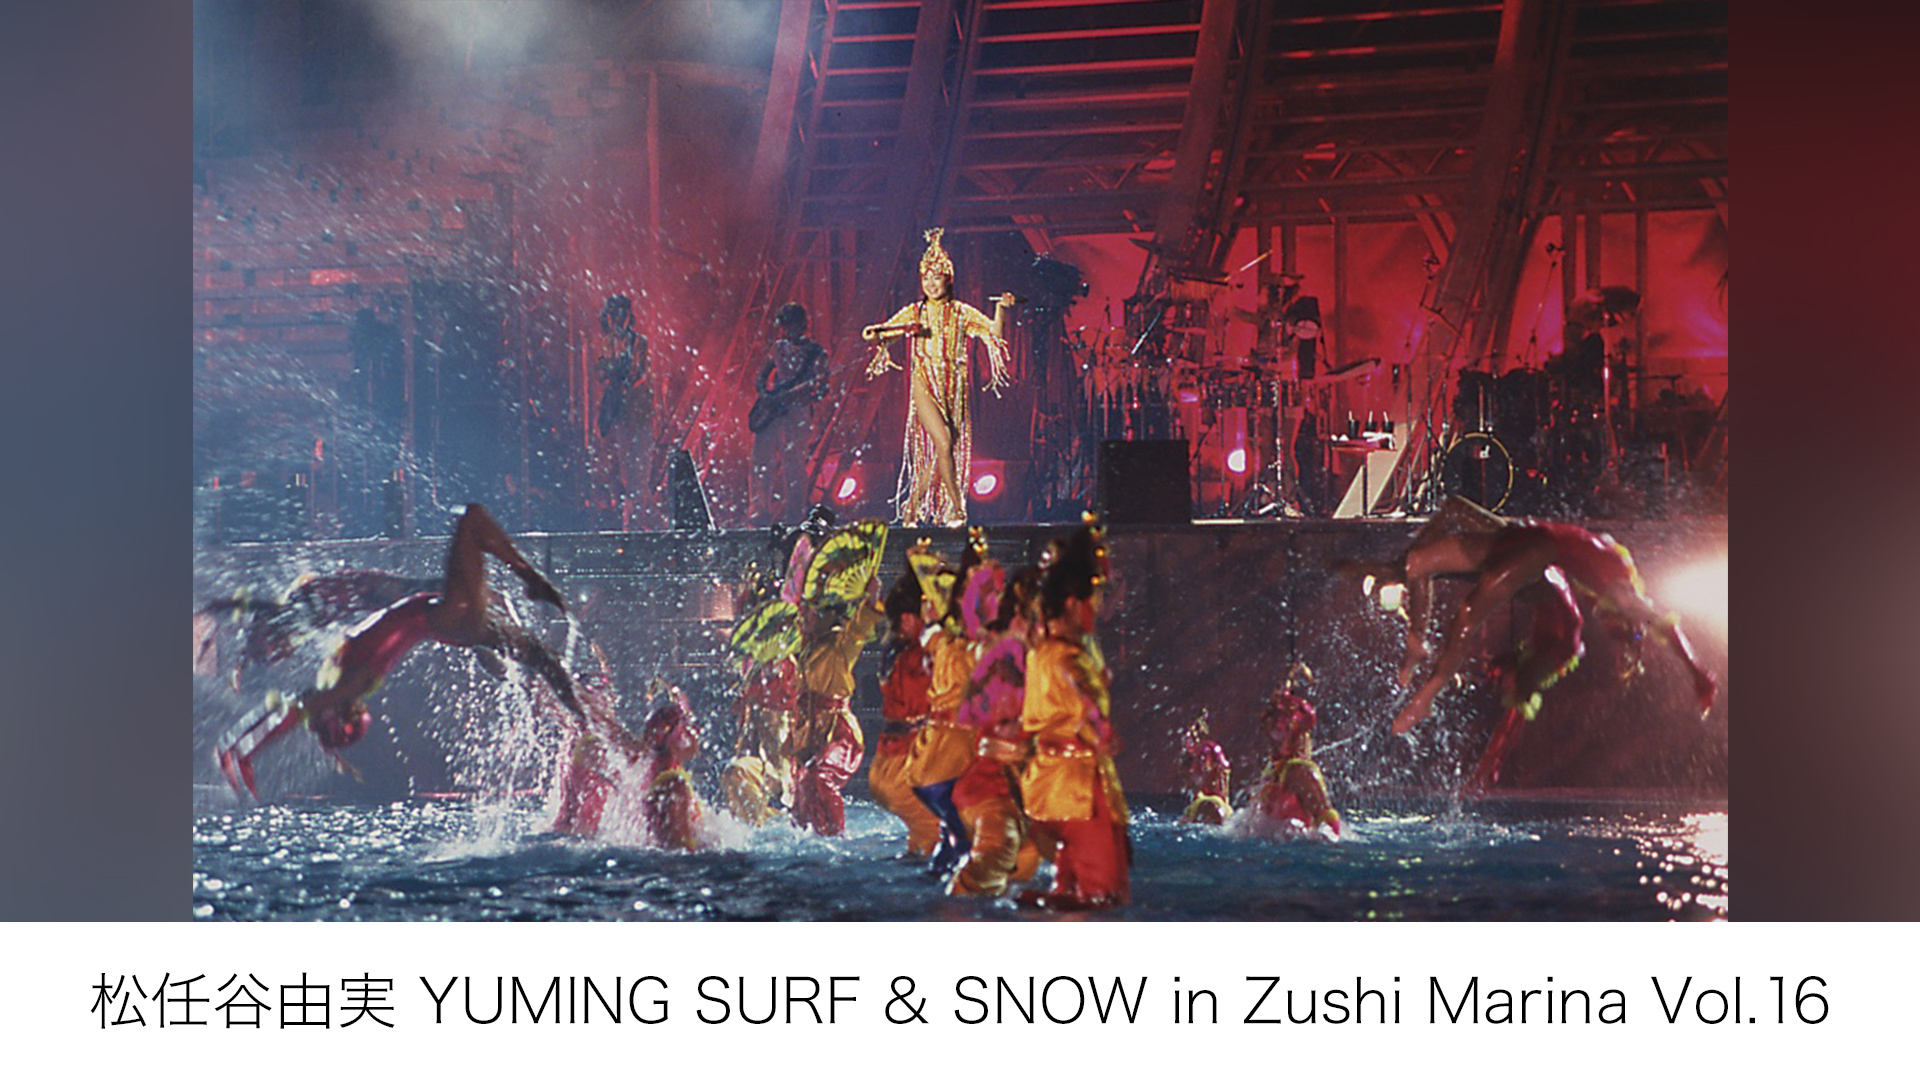 松任谷由実 YUMING SURF u0026 SNOW in Zushi Marina Vol.16 | WOWOWオンデマンドで見る